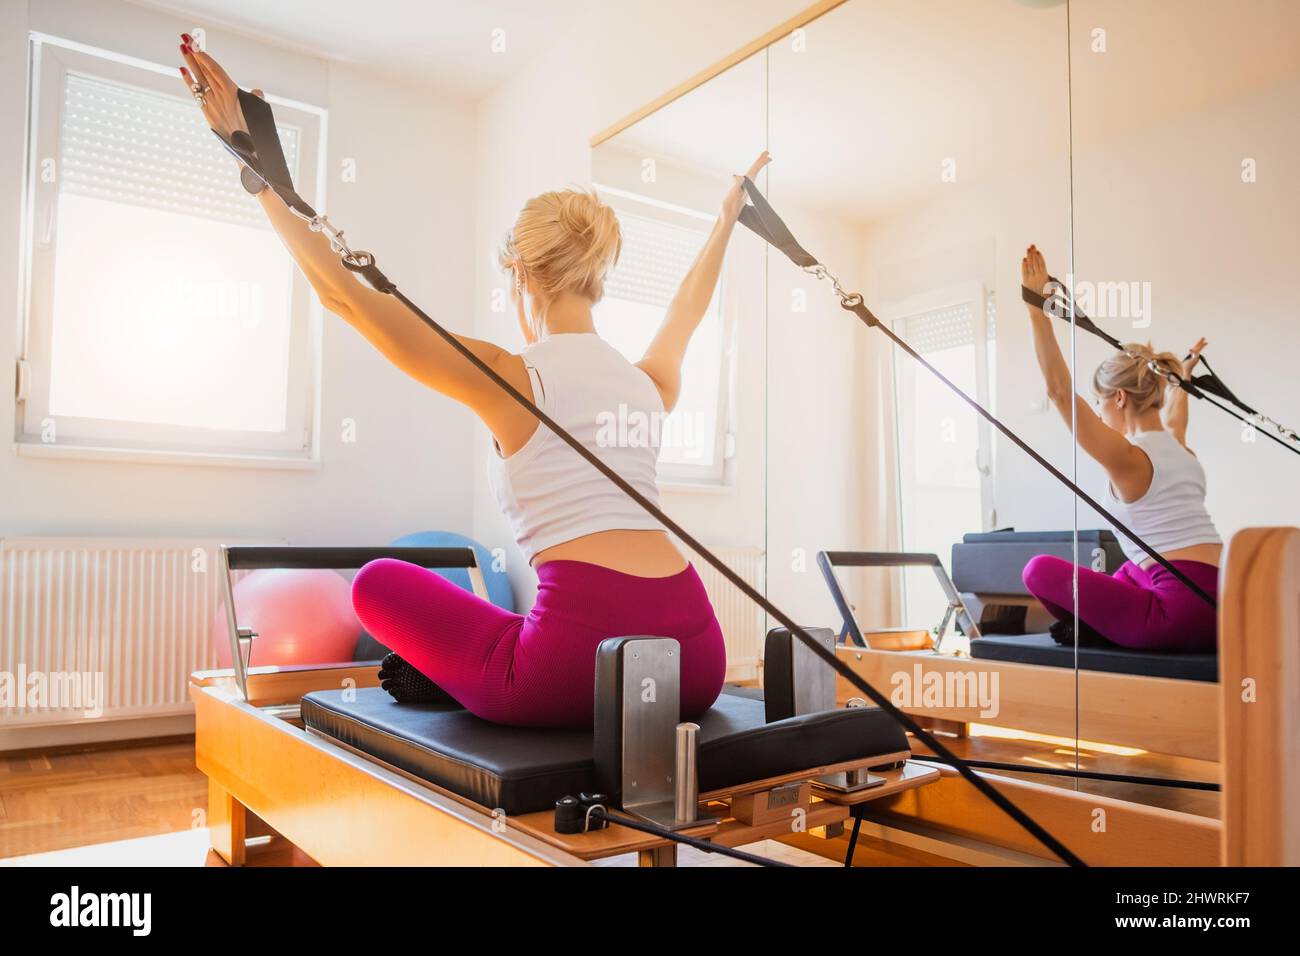 Mulher Está Se Exercitando Na Cama Reformadora Pilates Em Sua Casa. Foto  Royalty Free, Gravuras, Imagens e Banco de fotografias. Image 183745870